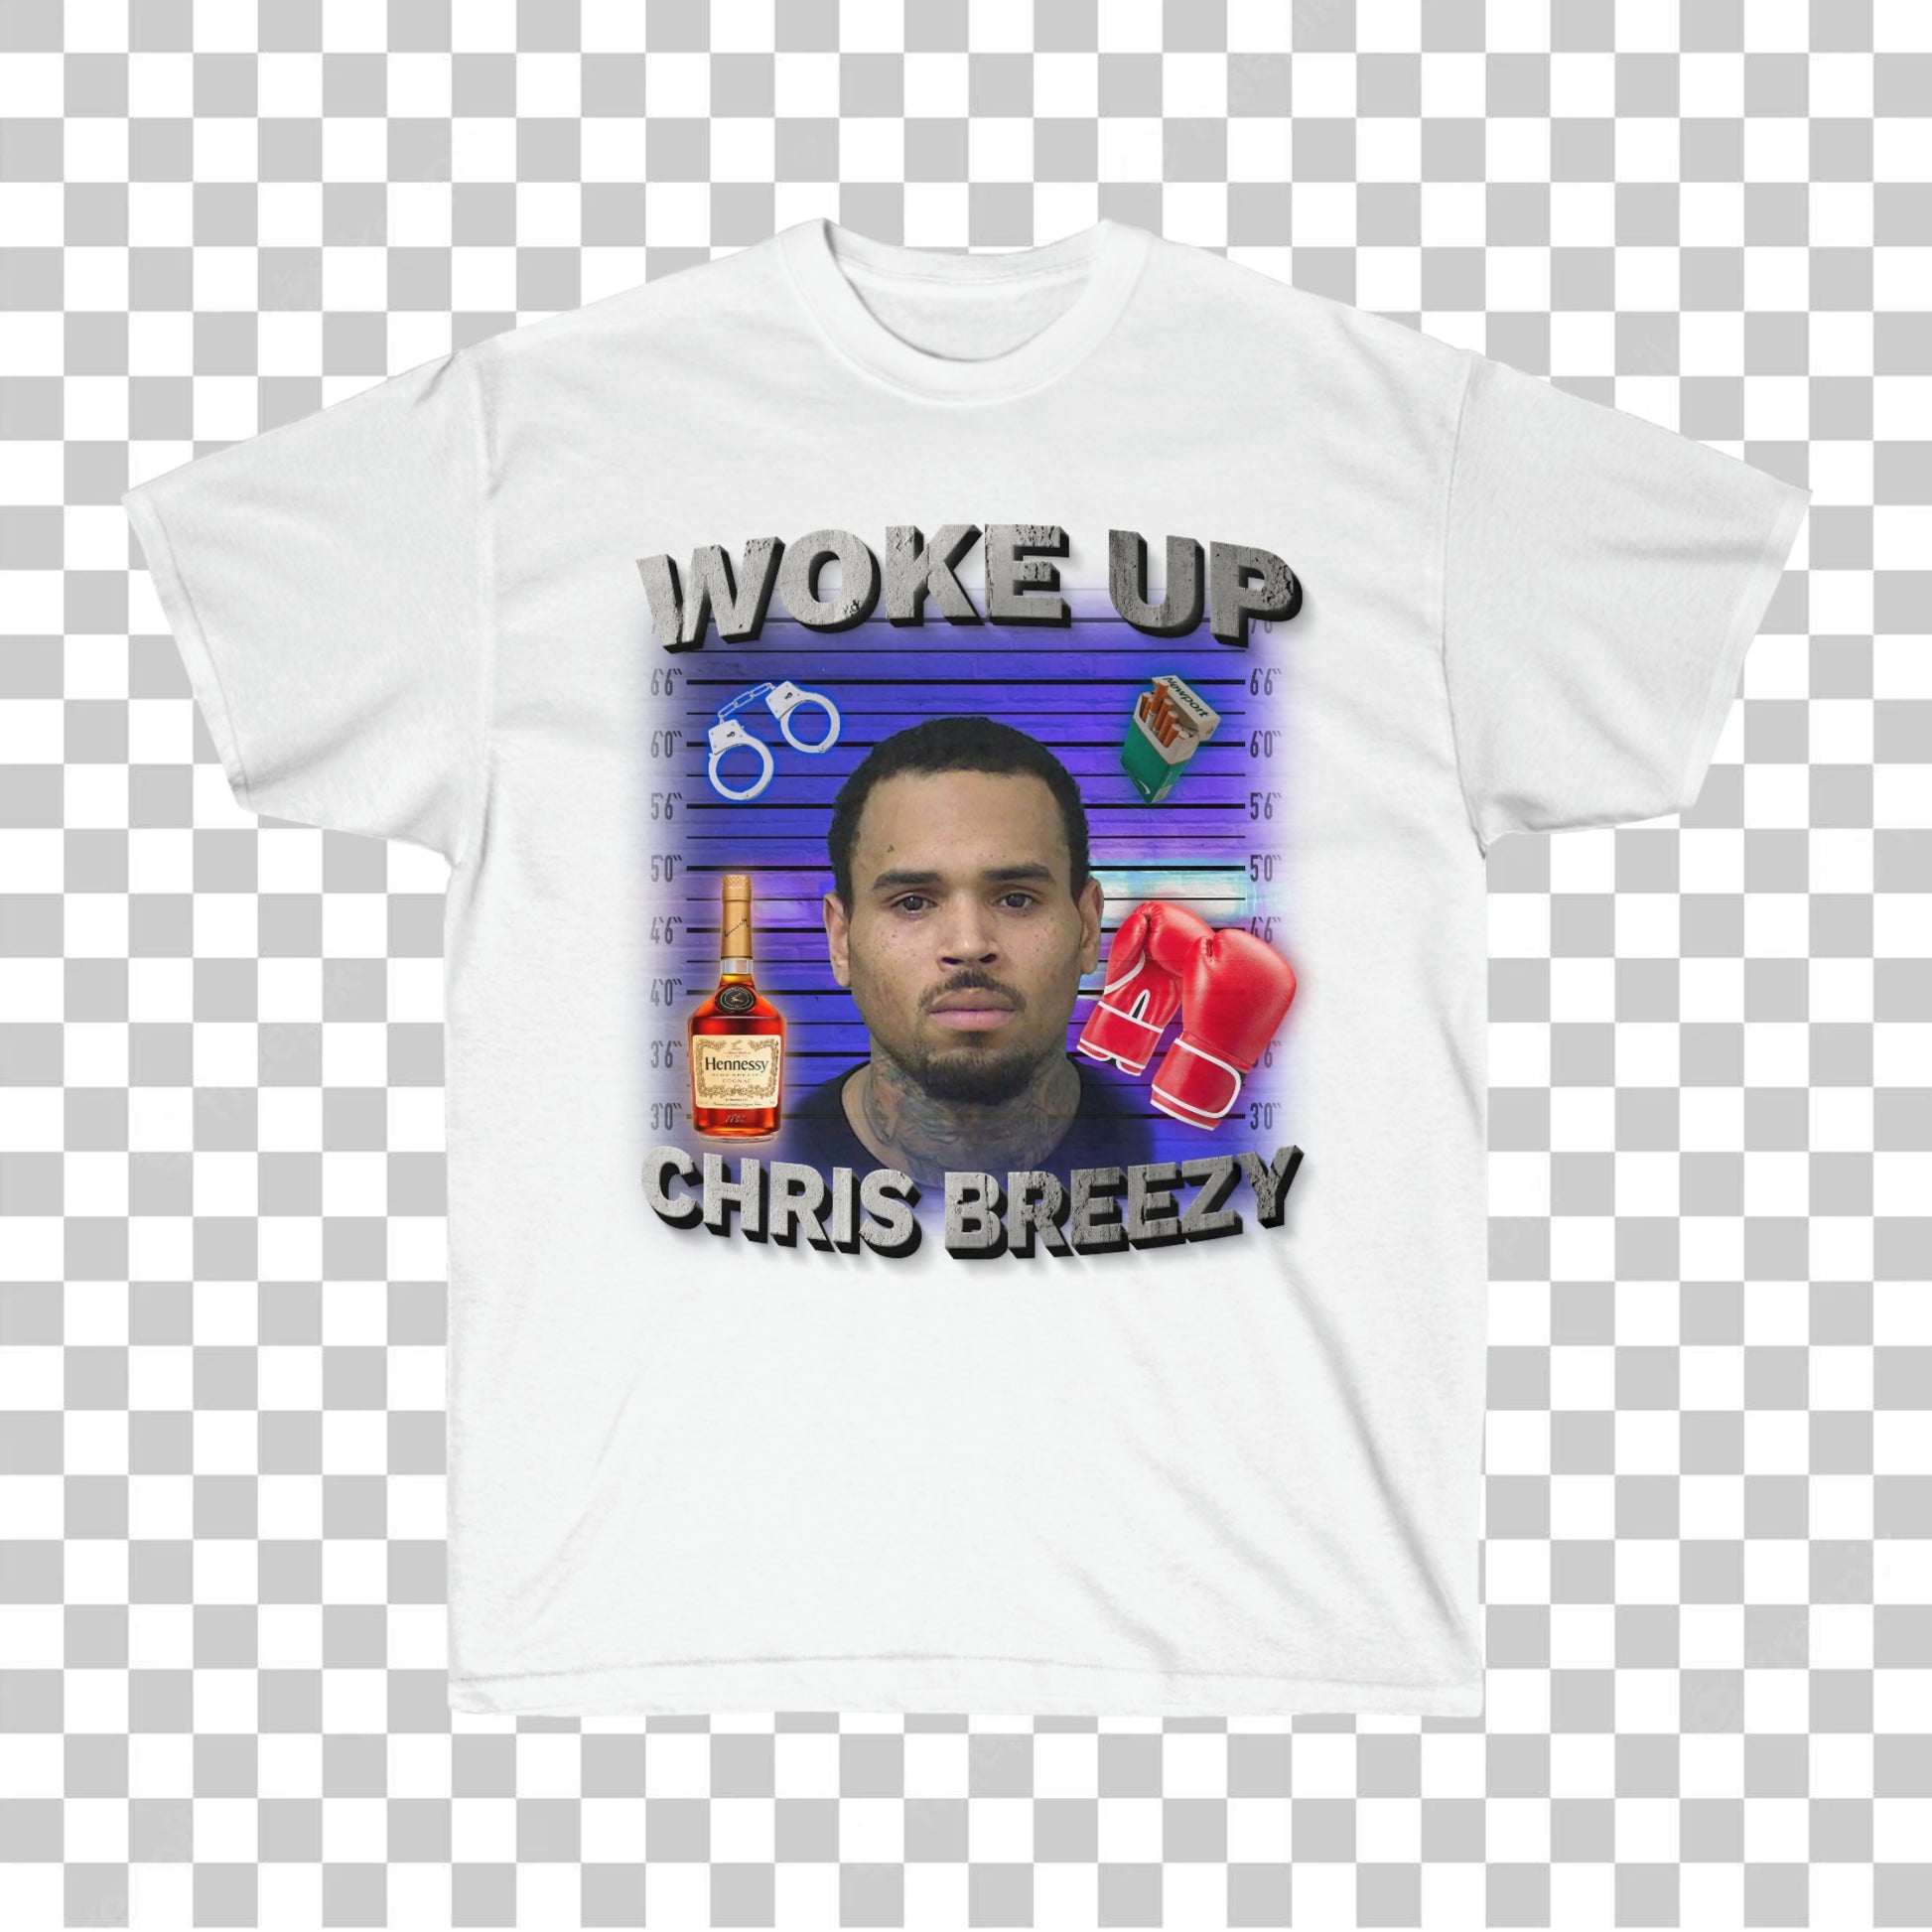 Chris Brown mugshot